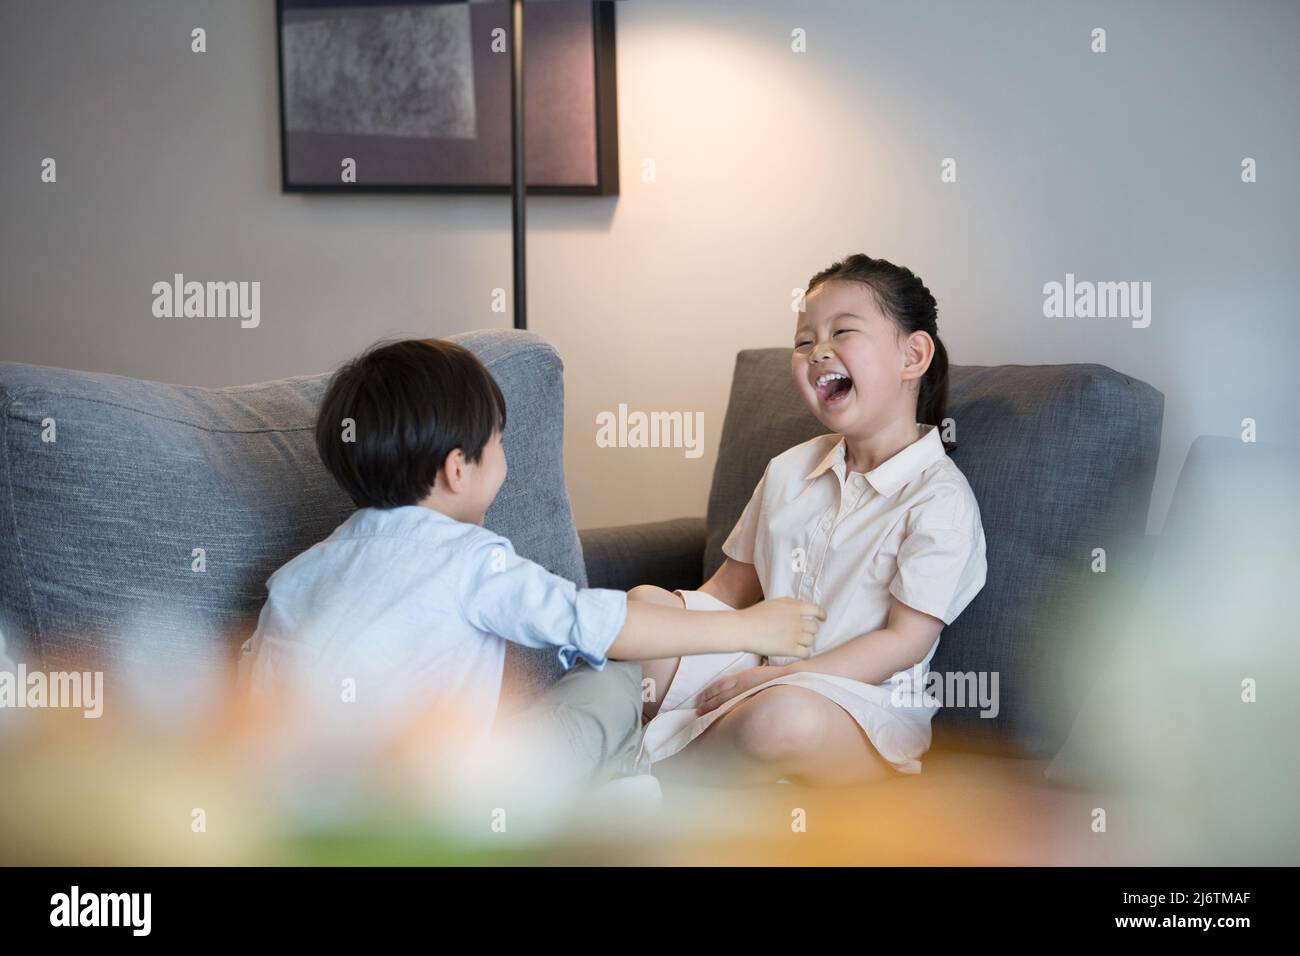 Une petite fille et un petit garçon assis à pieds croisés sur le canapé du salon riant avec joie - photo de stock Banque D'Images